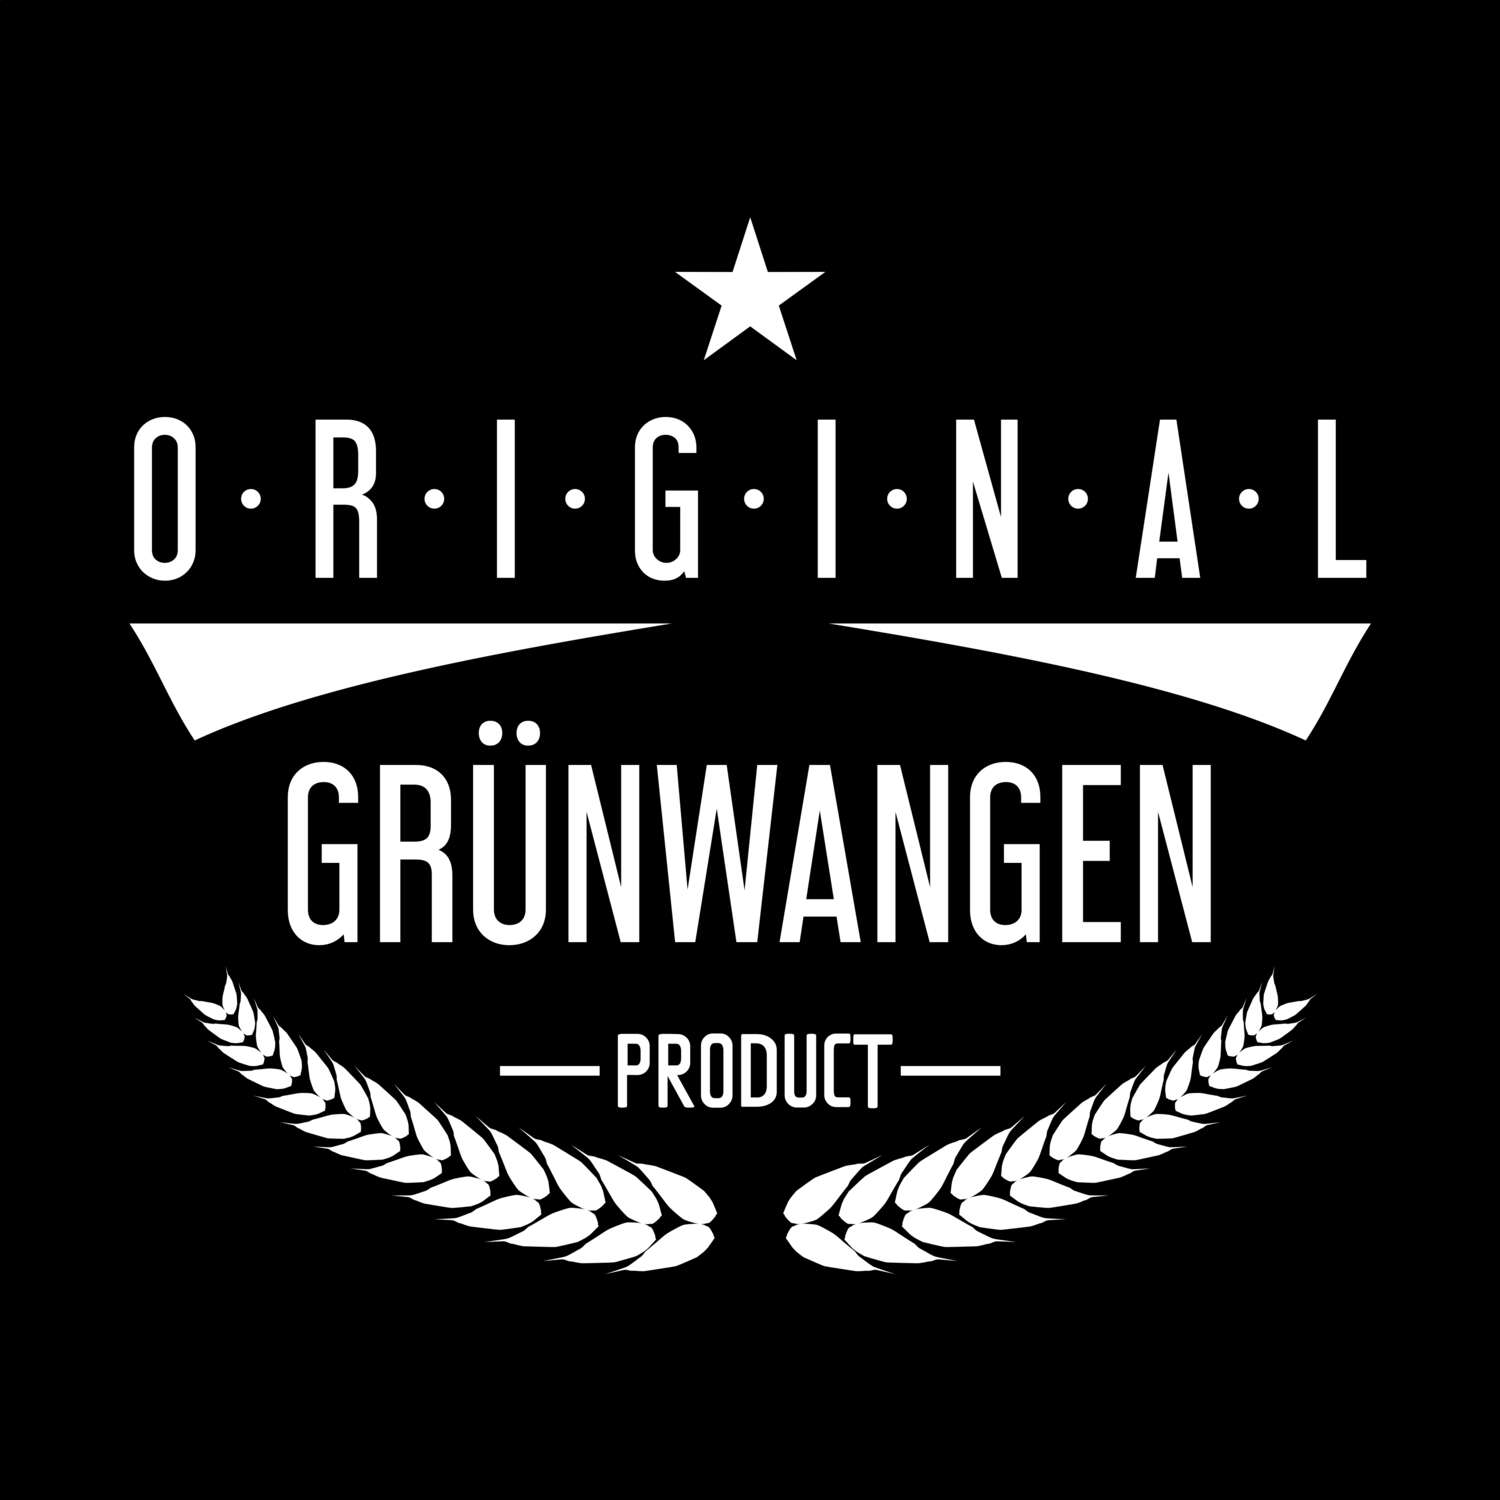 Grünwangen T-Shirt »Original Product«